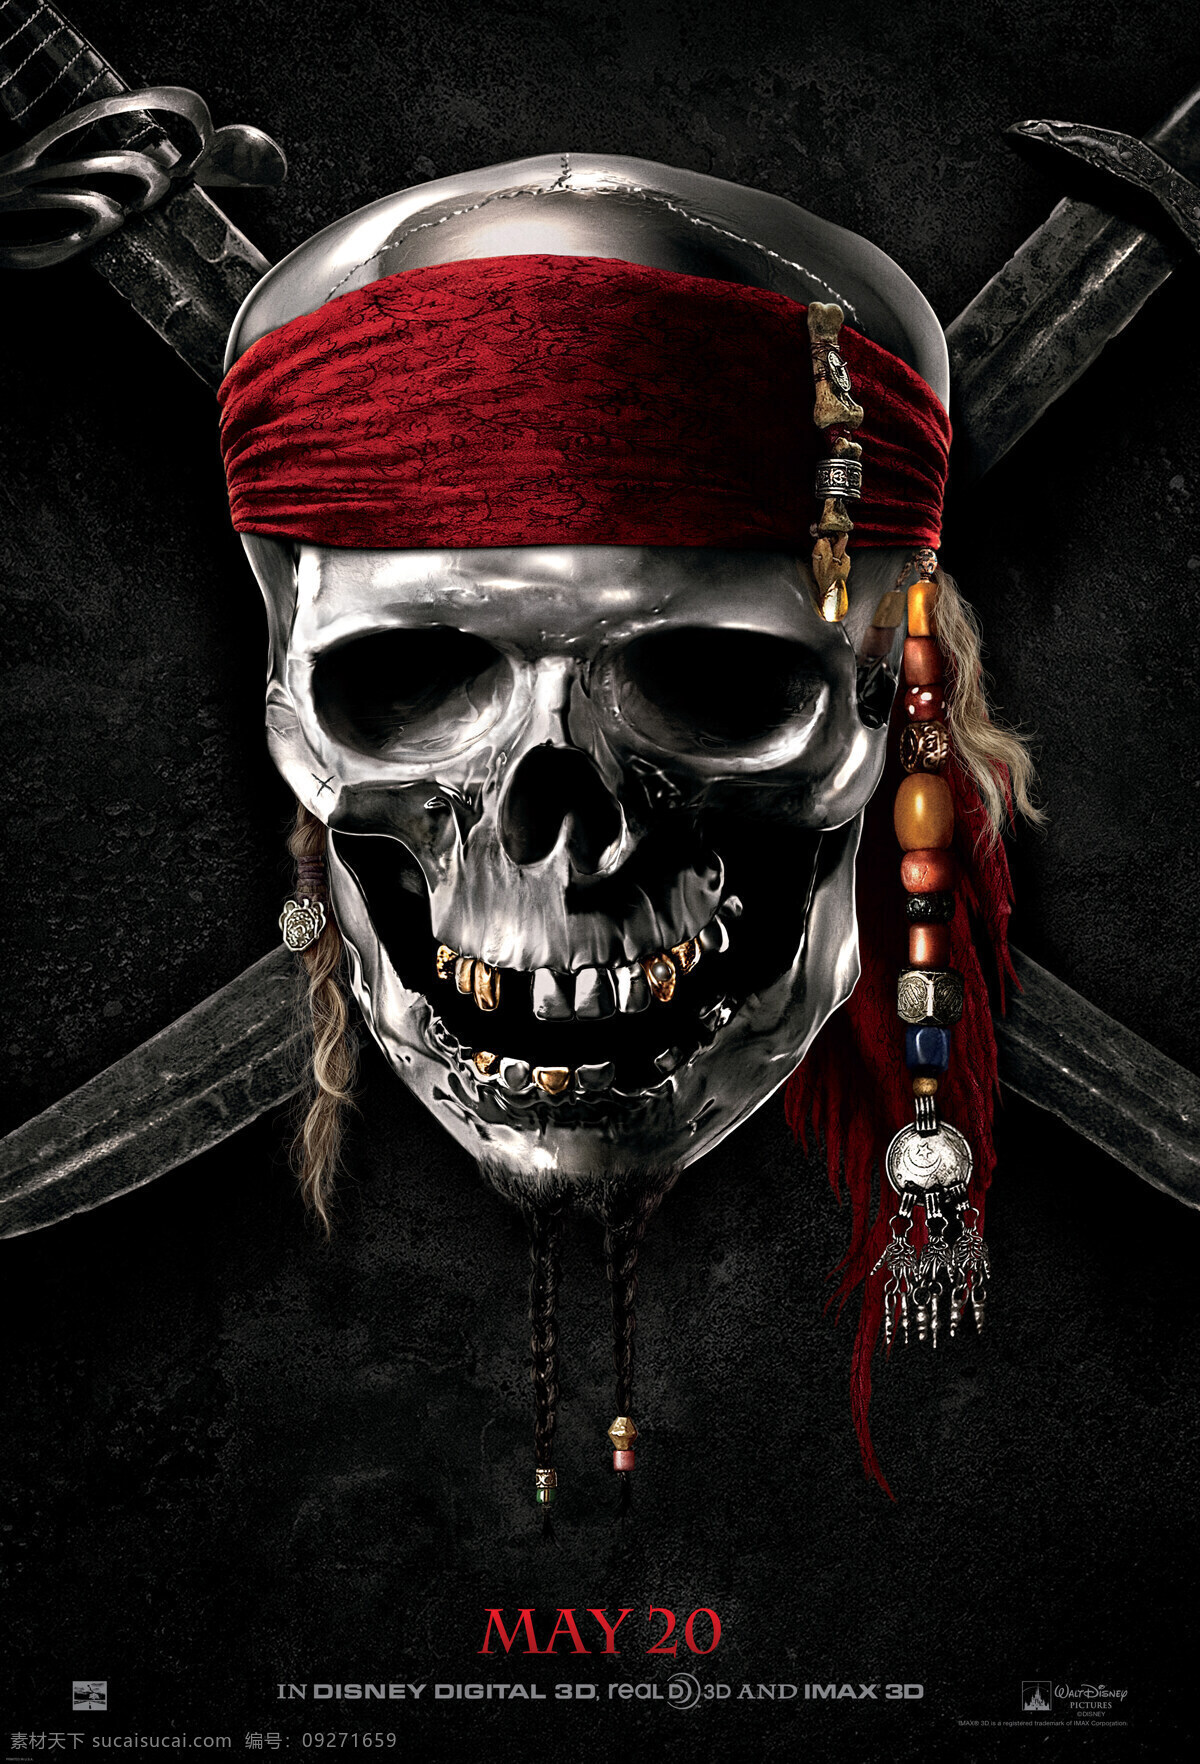 加勒比海盗 文化艺术 加勒比 海盗 海报 加勒比海盗4 约翰尼德普 佩内洛 普克 鲁兹 杰弗里拉什 影视娱乐 企业文化海报